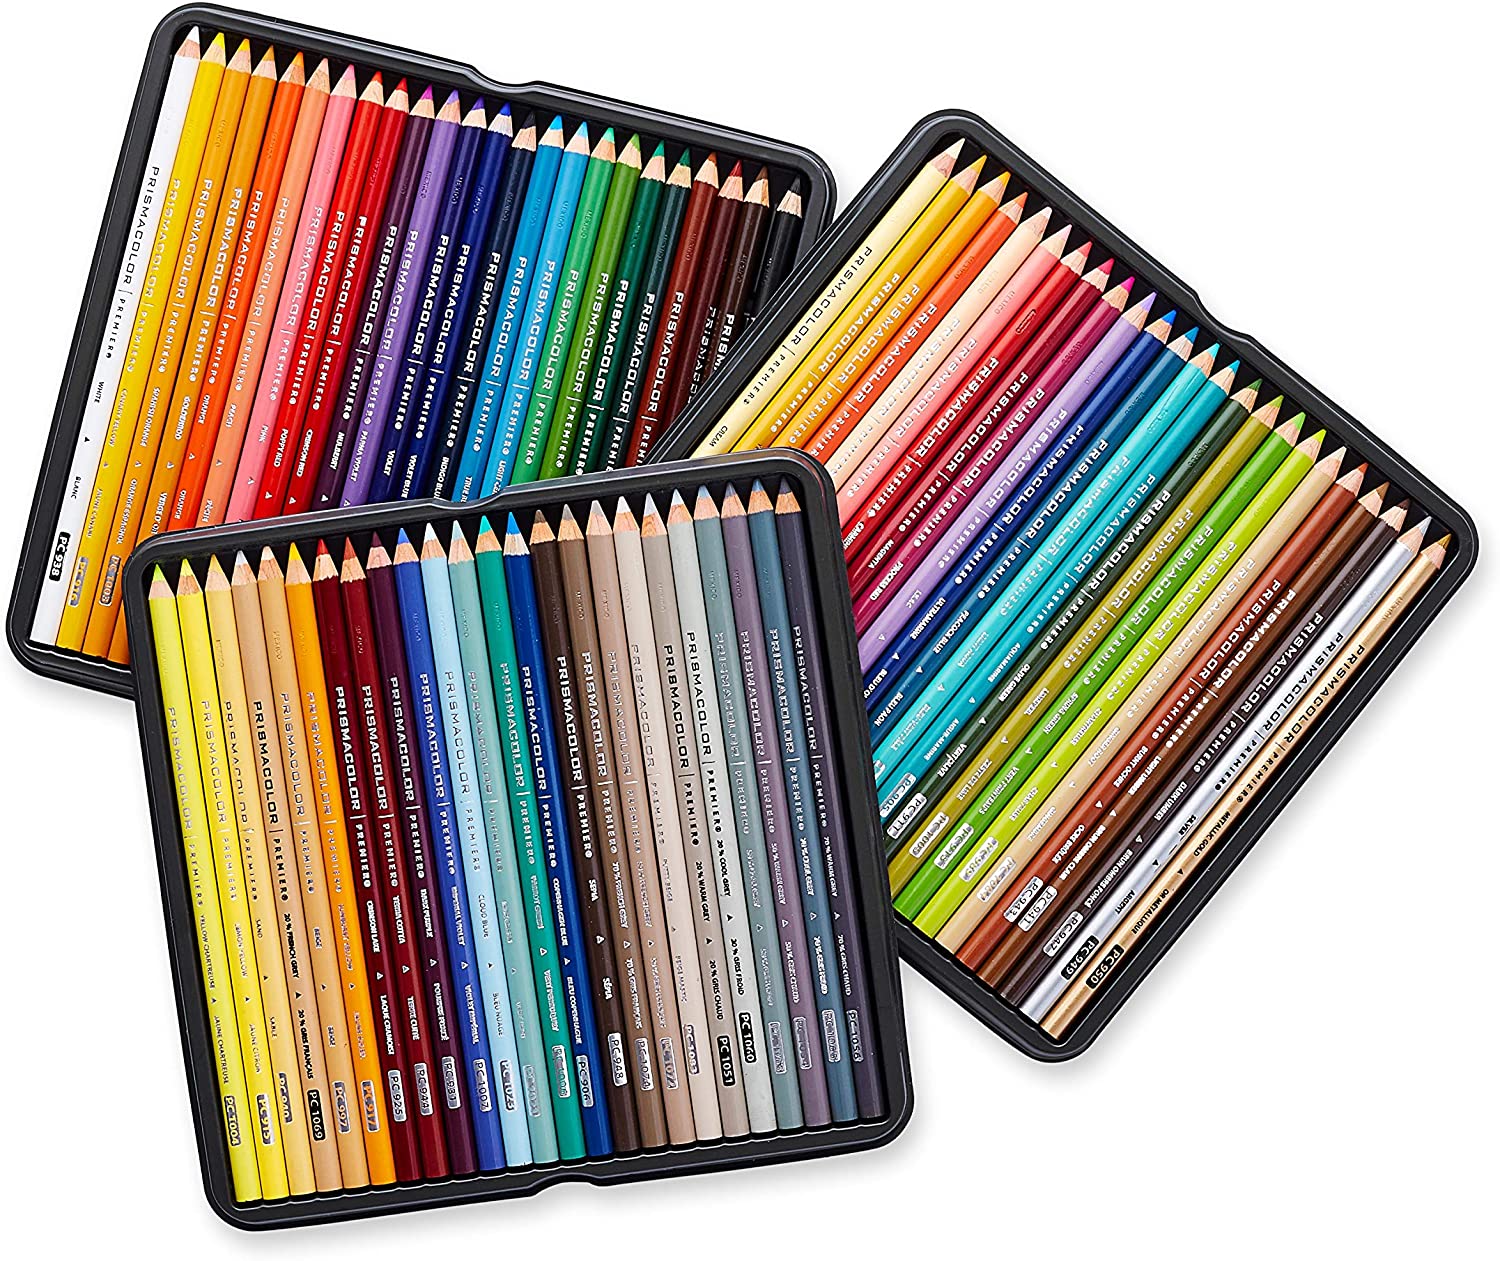 Brand New - Prismacolor Premier Soft Core 150 Ct Colored Pencils